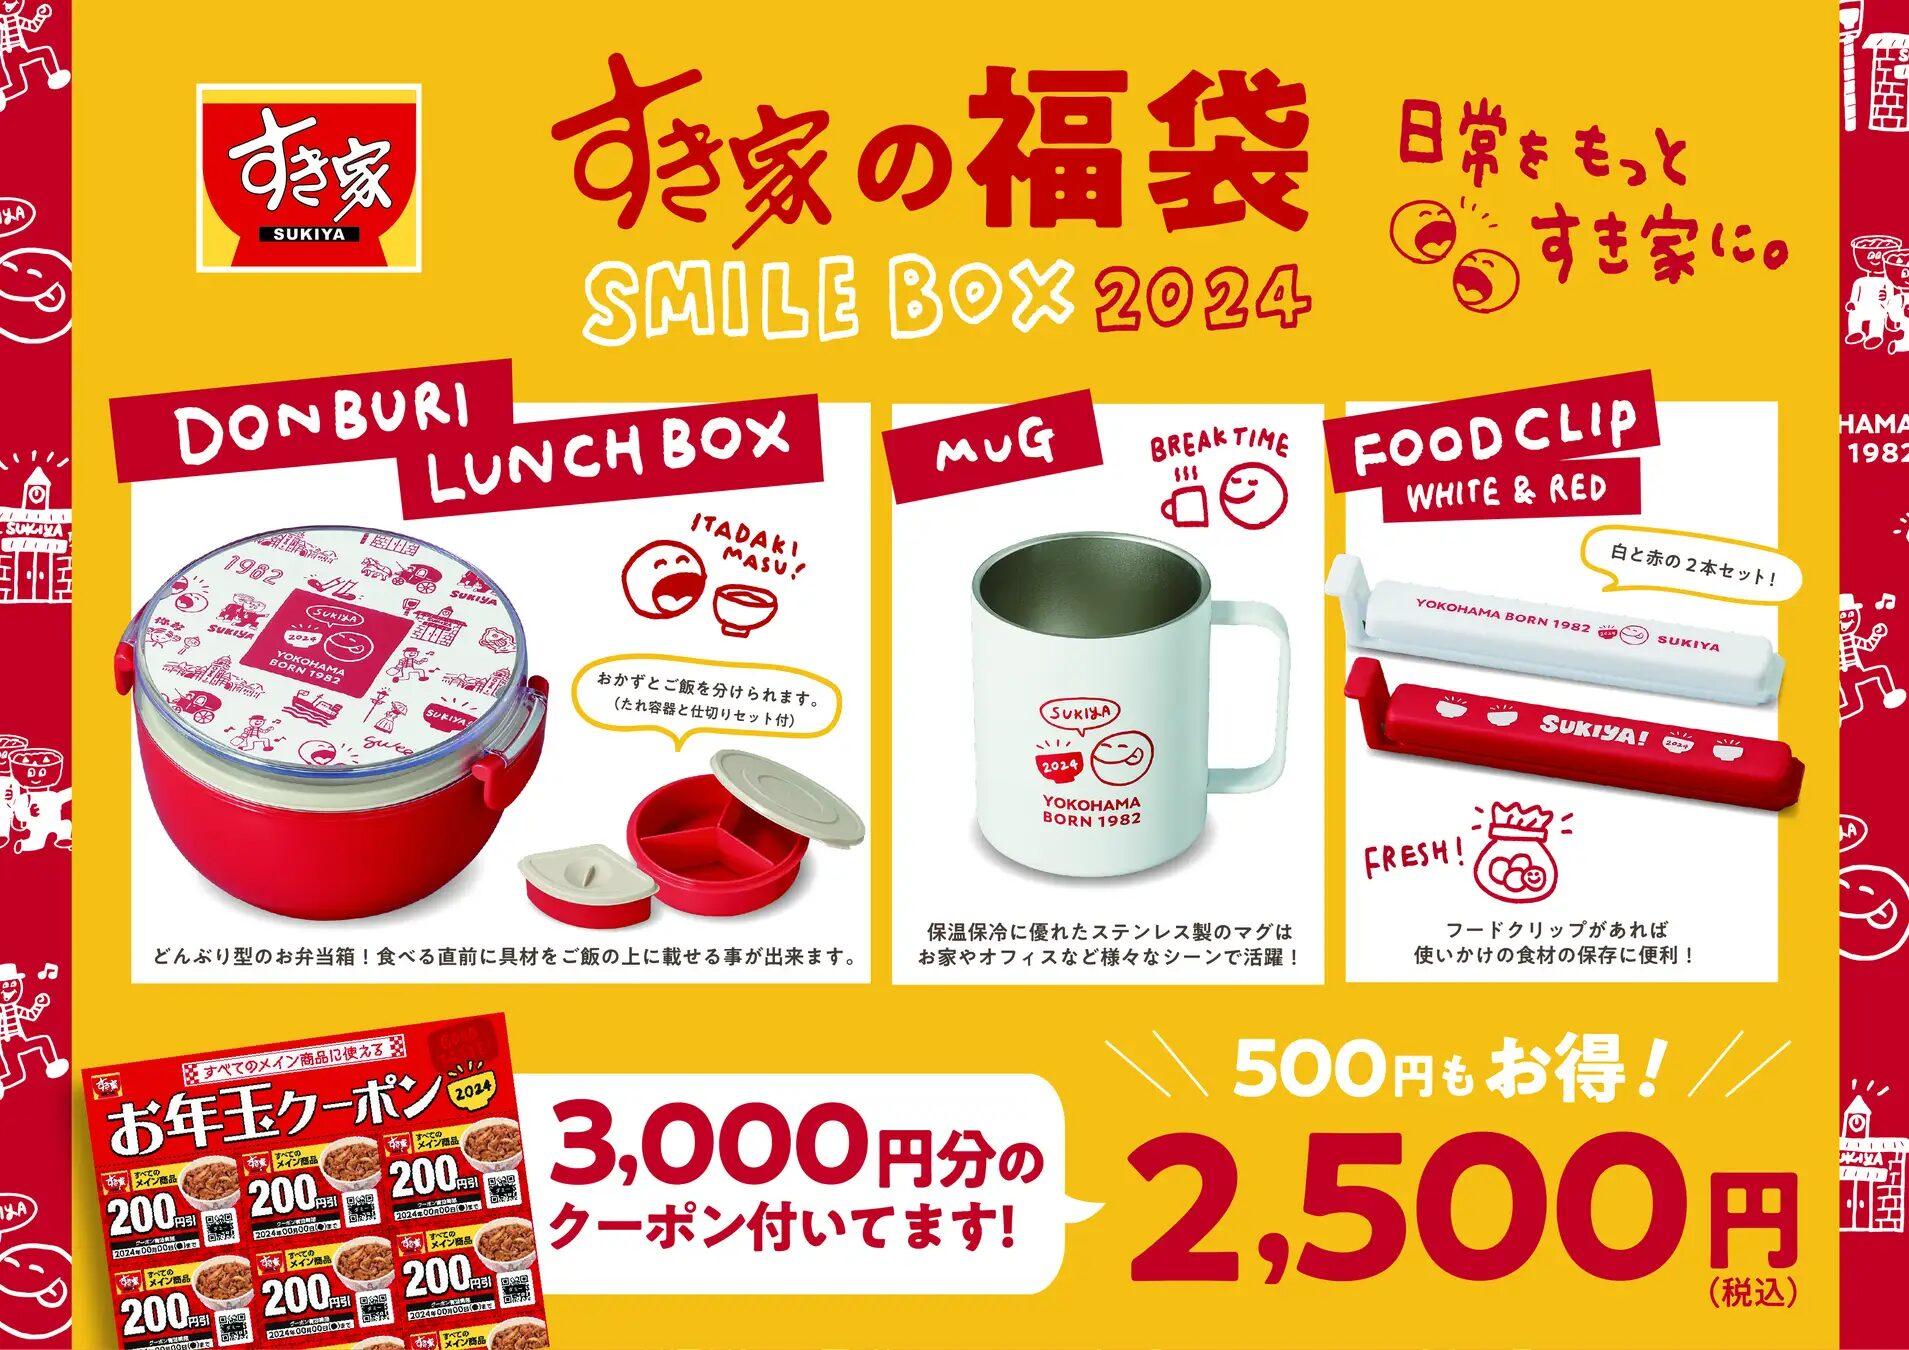 すき家の福袋「SMILE BOX 2024」